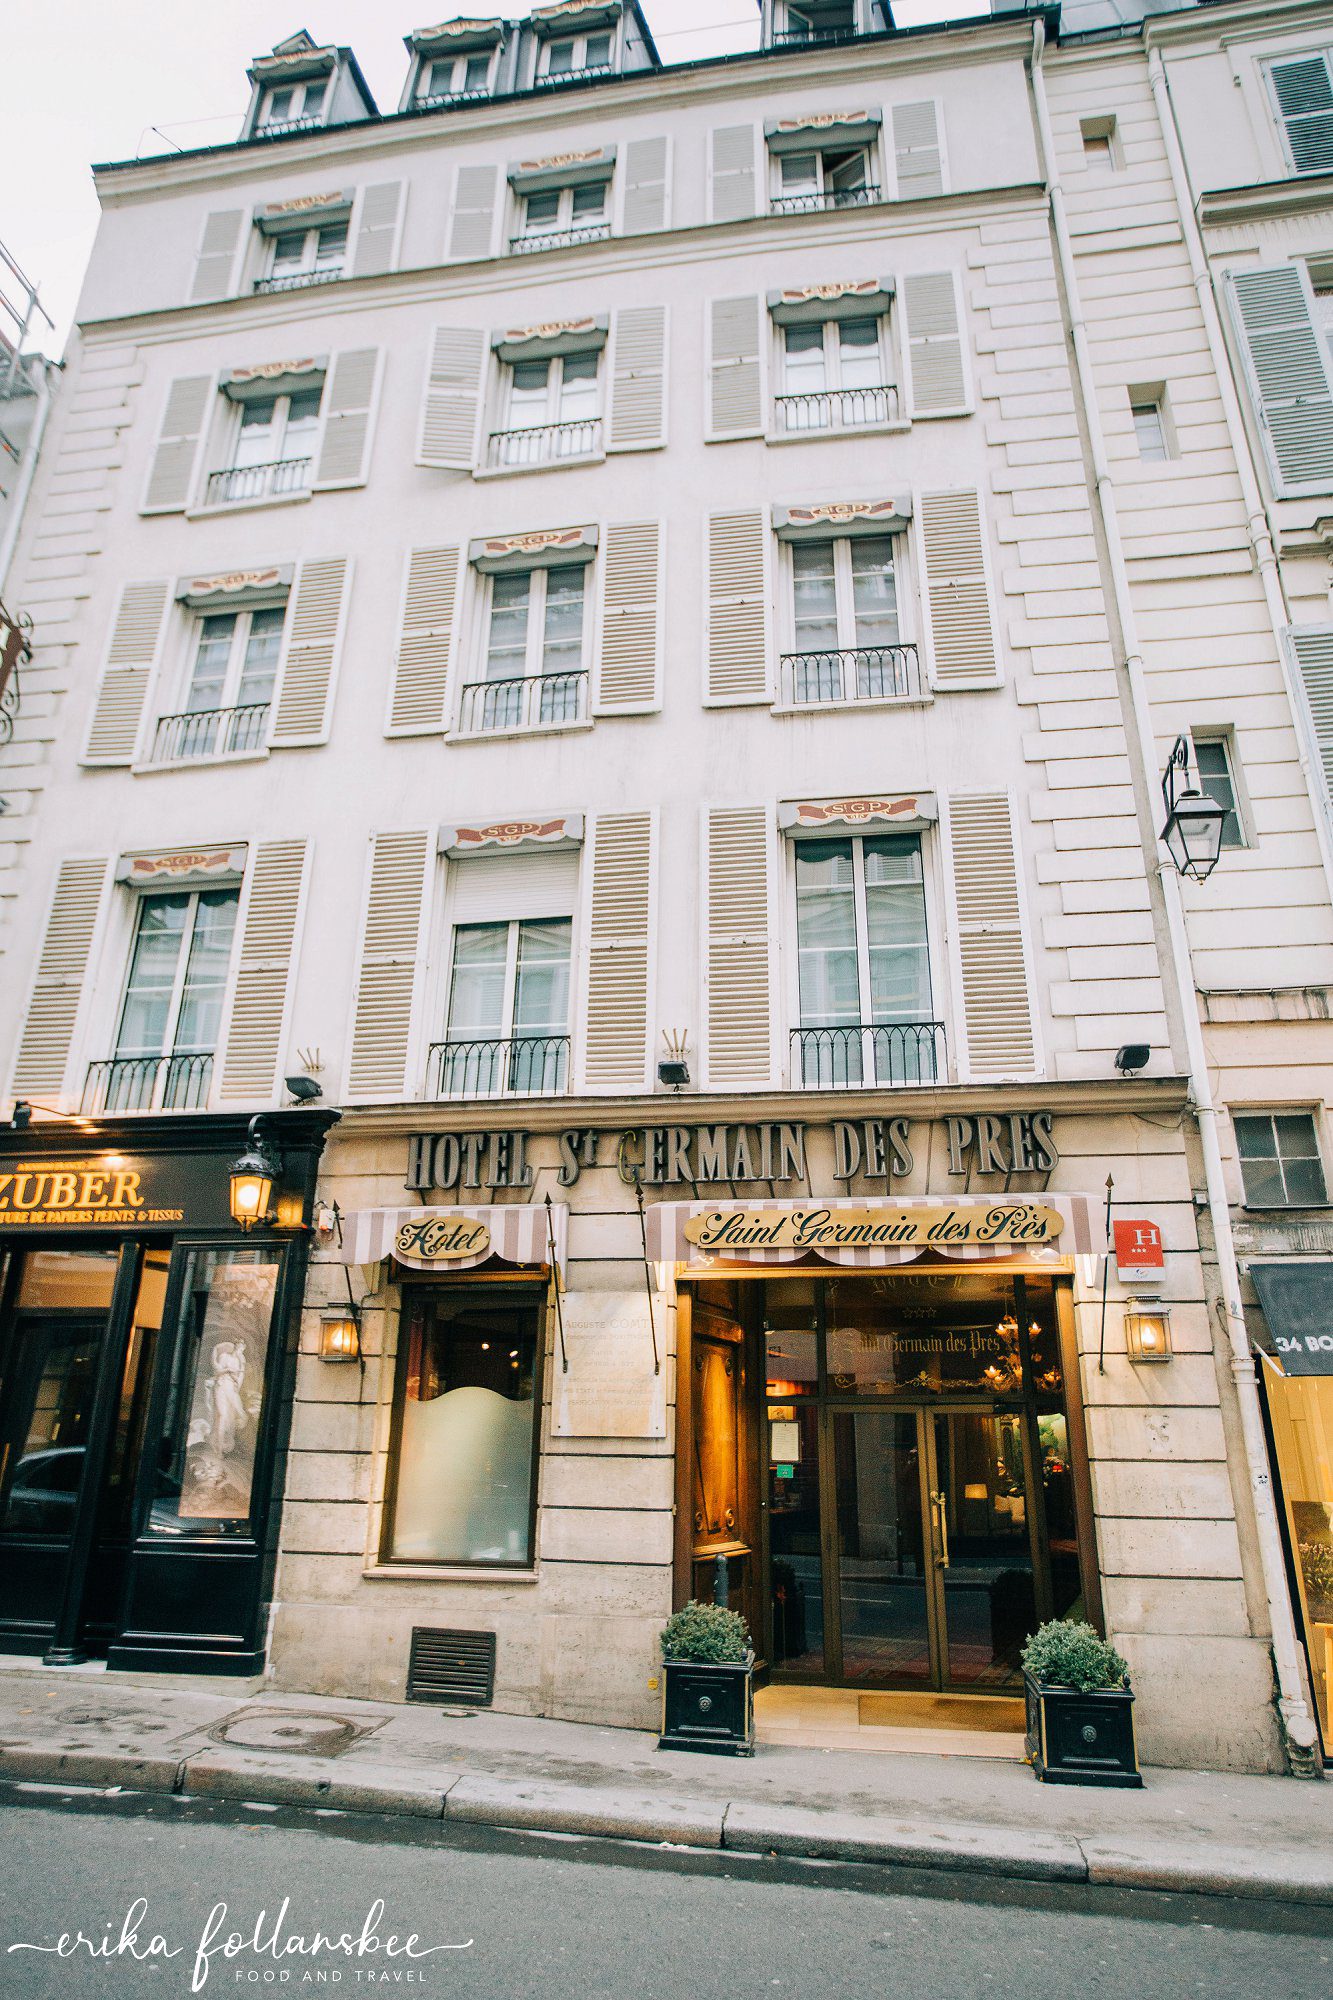 Hotel Saint Germain des Pres in Paris, France 6th arrondissement